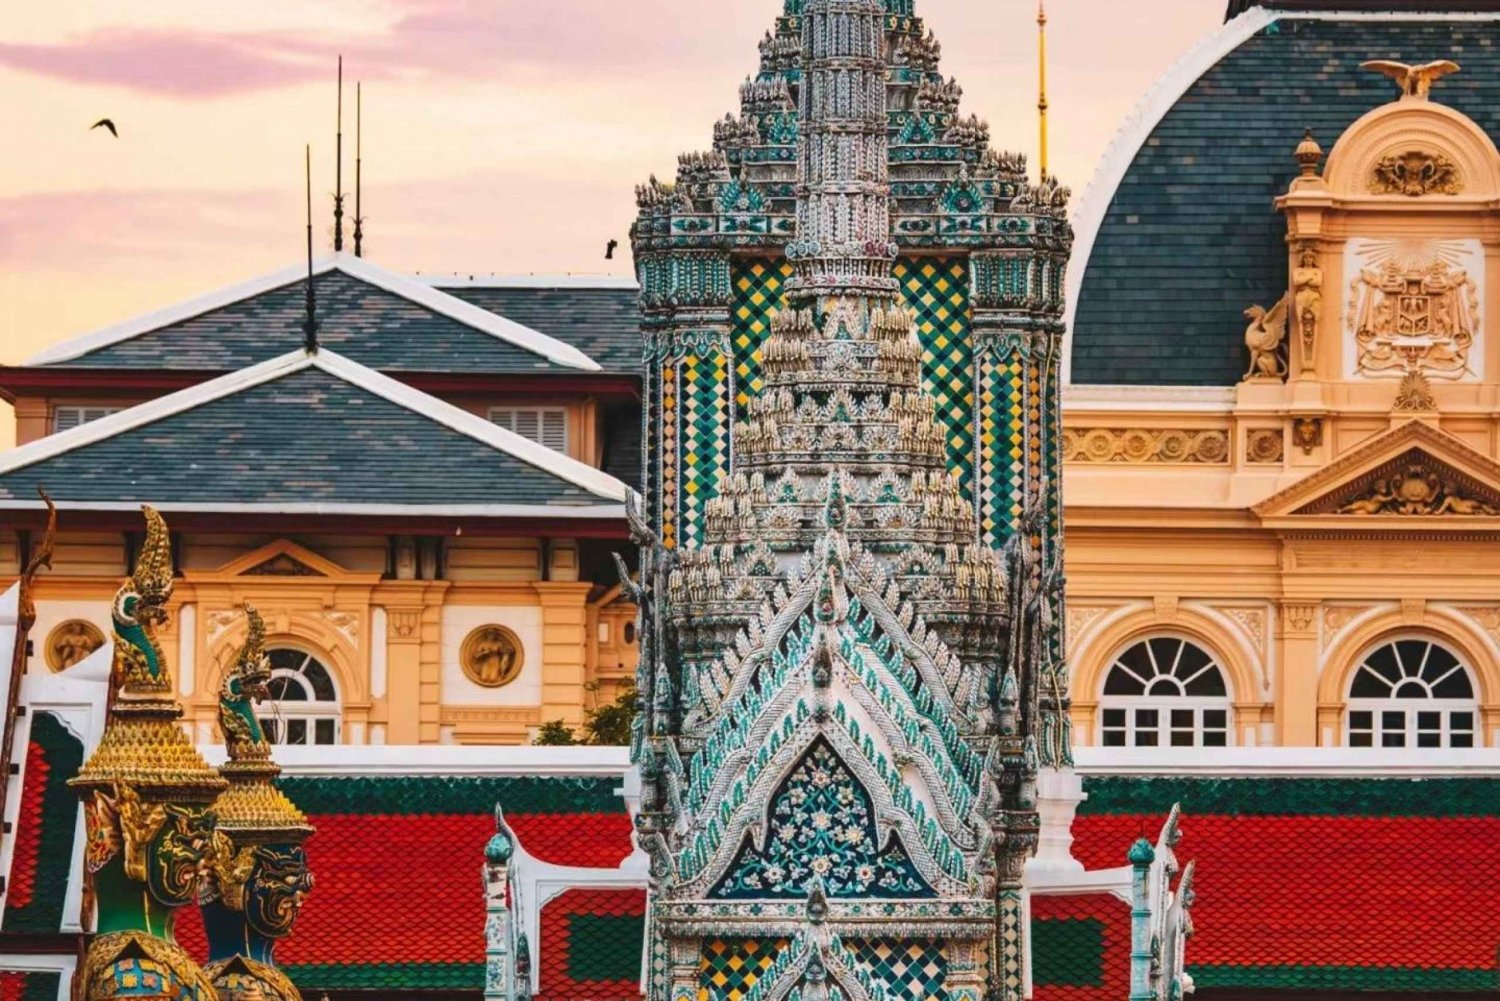 Bangkokin yksityinen kiertoajelu 10h : Suunnittele oma matkasi